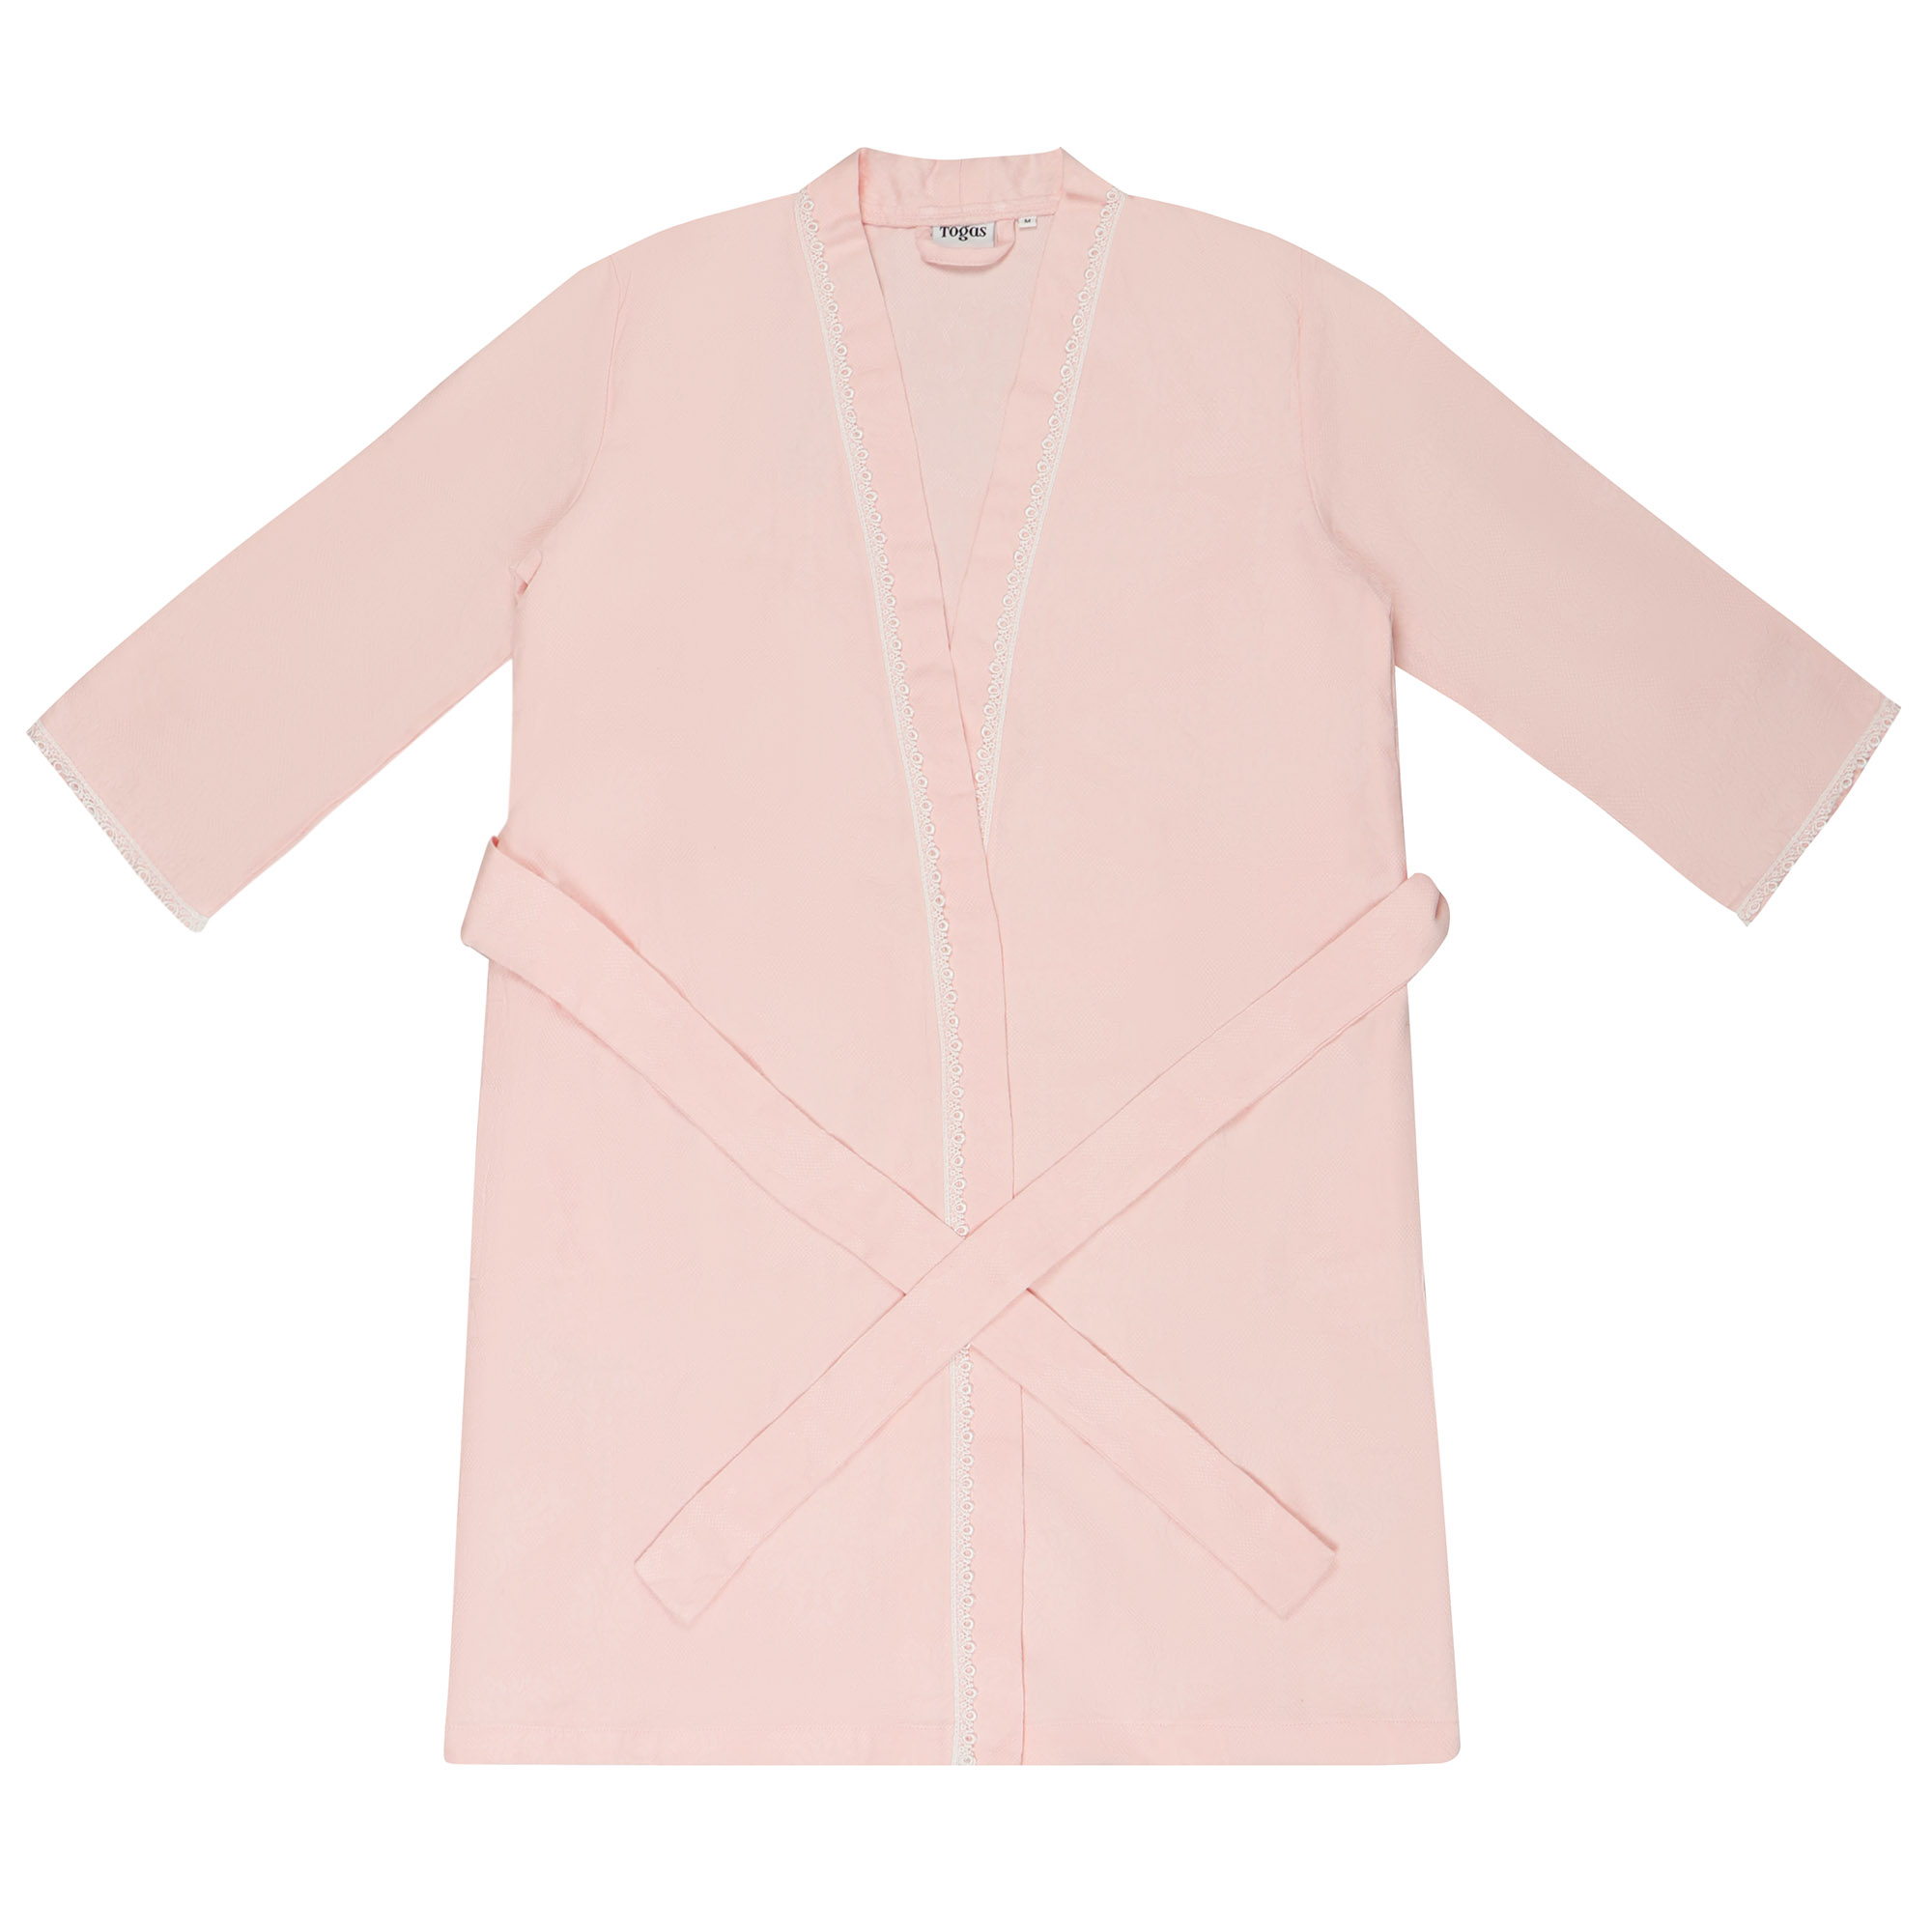 Халат Togas Дорис светло-розовый XL (50) халат togas размер xl розовый